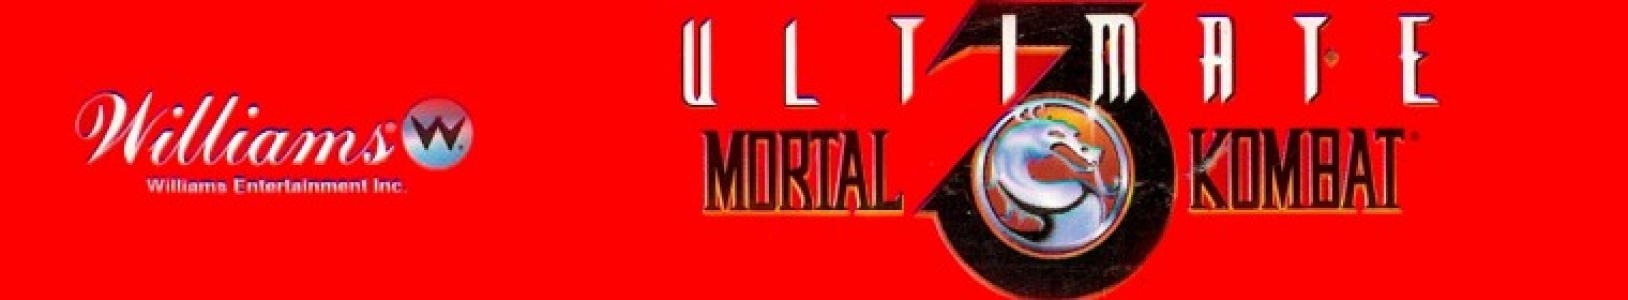 Ultimate Mortal Kombat 3 banner